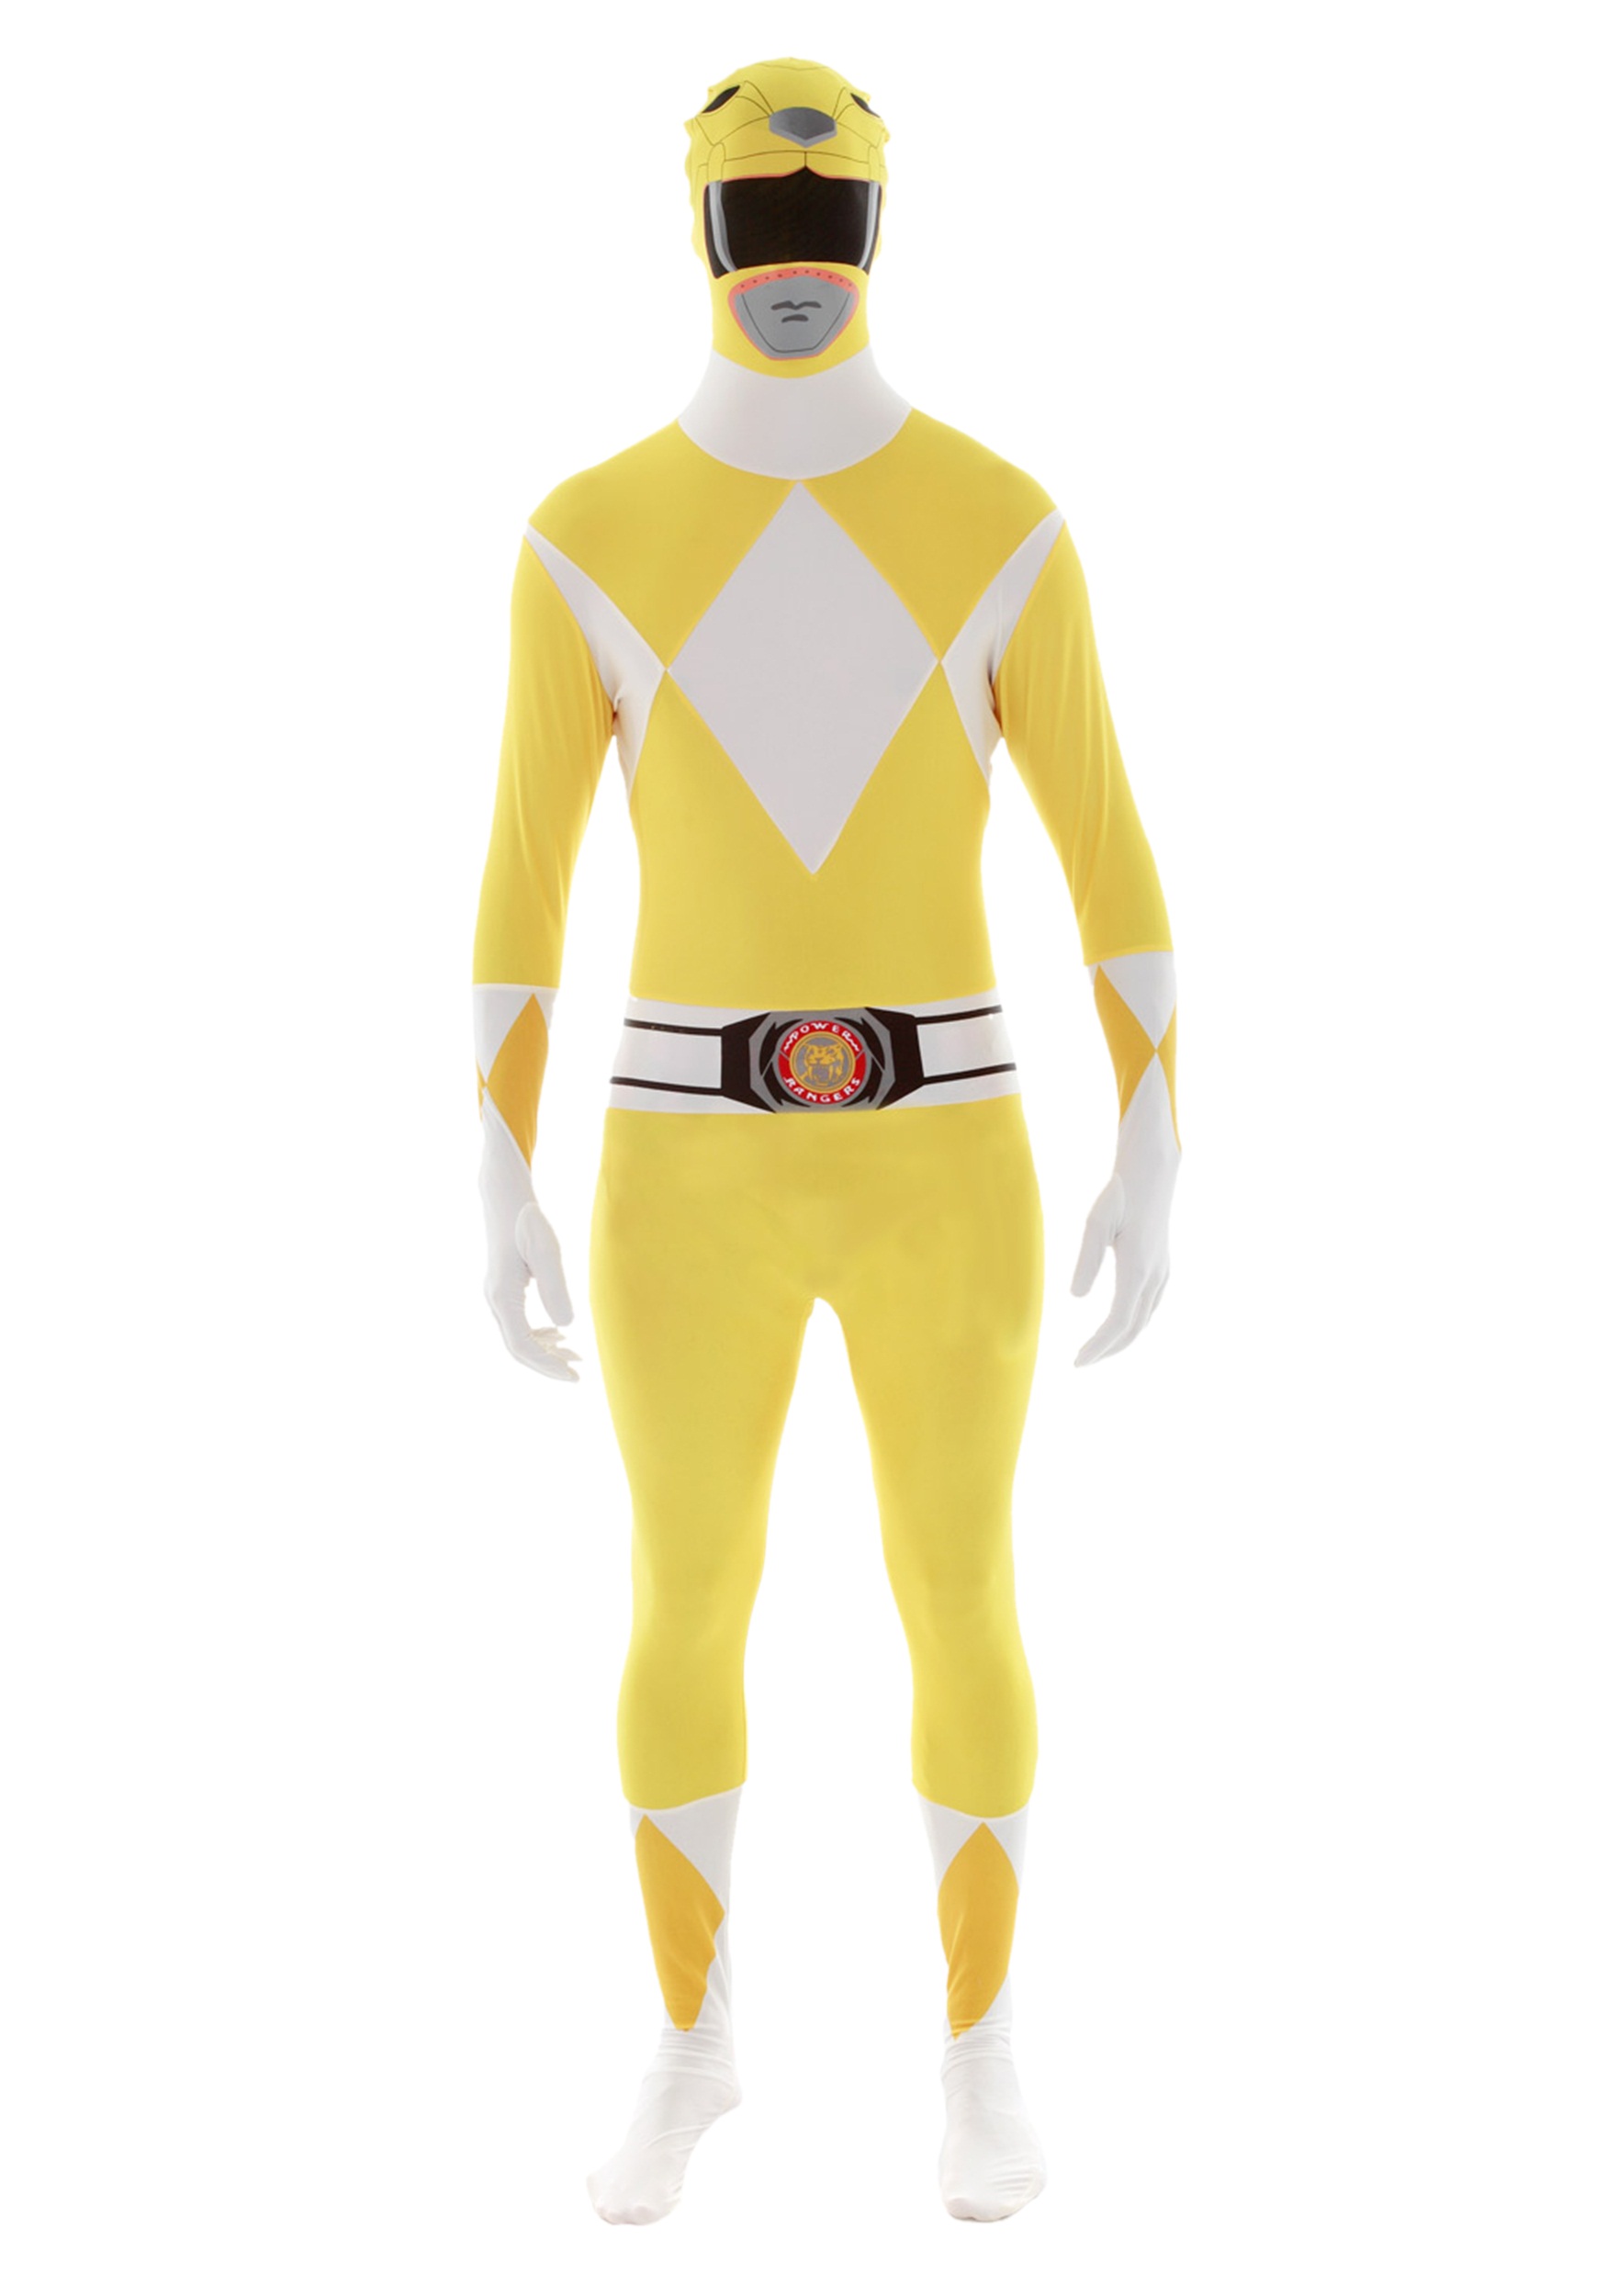 Power Rangers: Yellow Ranger Morphsuit Costume